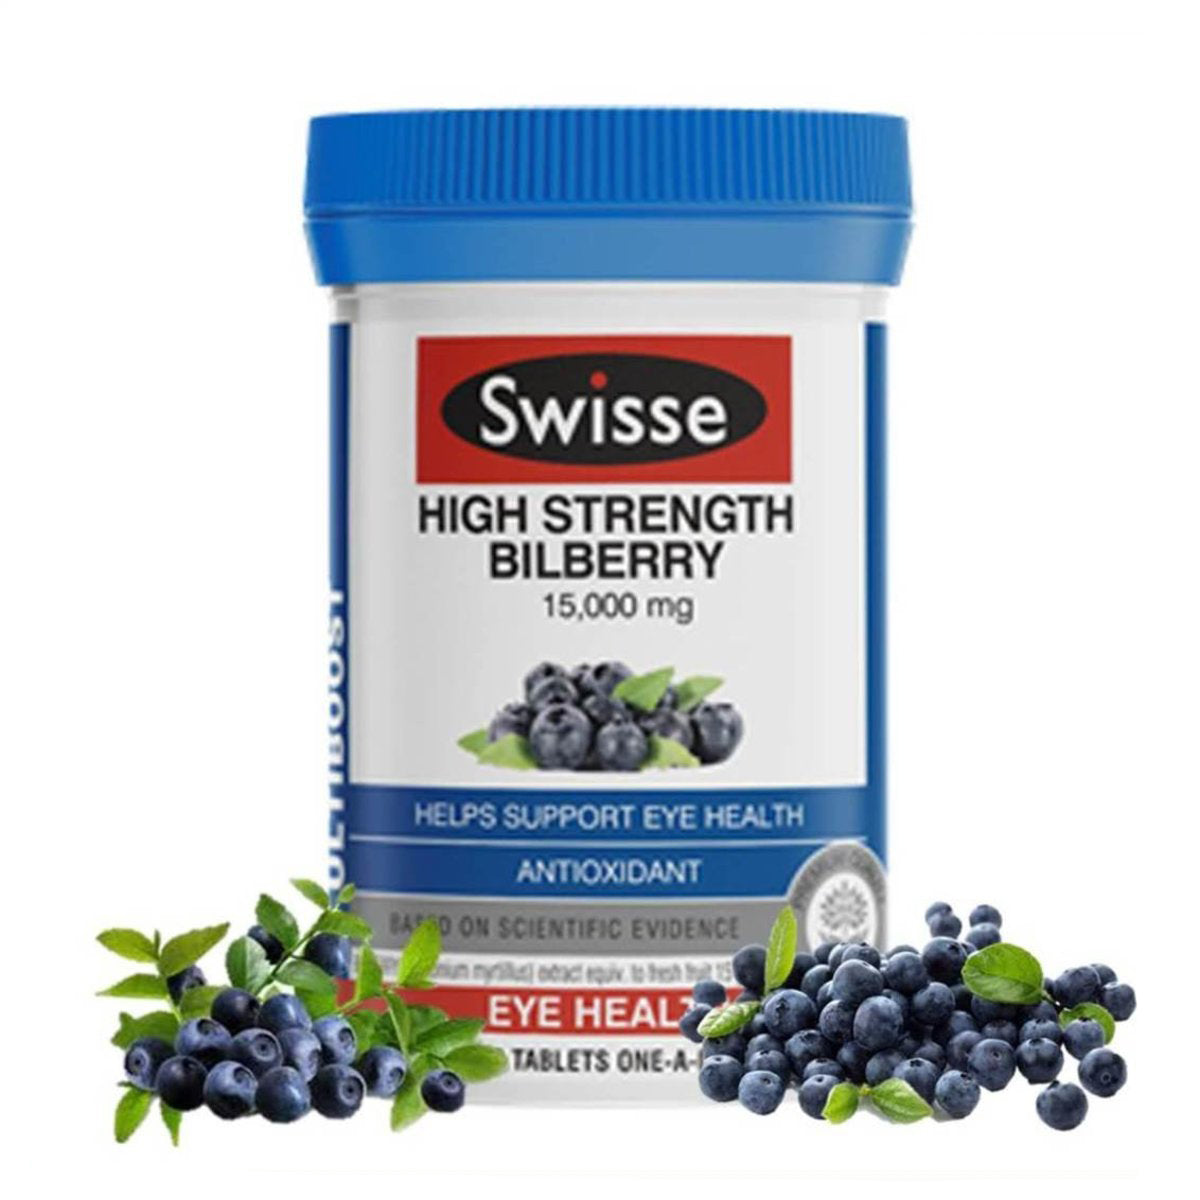 Swisse Ultiboost 明目抗衰老高濃縮山桑子 (歐洲藍莓) 精華 30 粒 (兩種包裝將隨機提供)